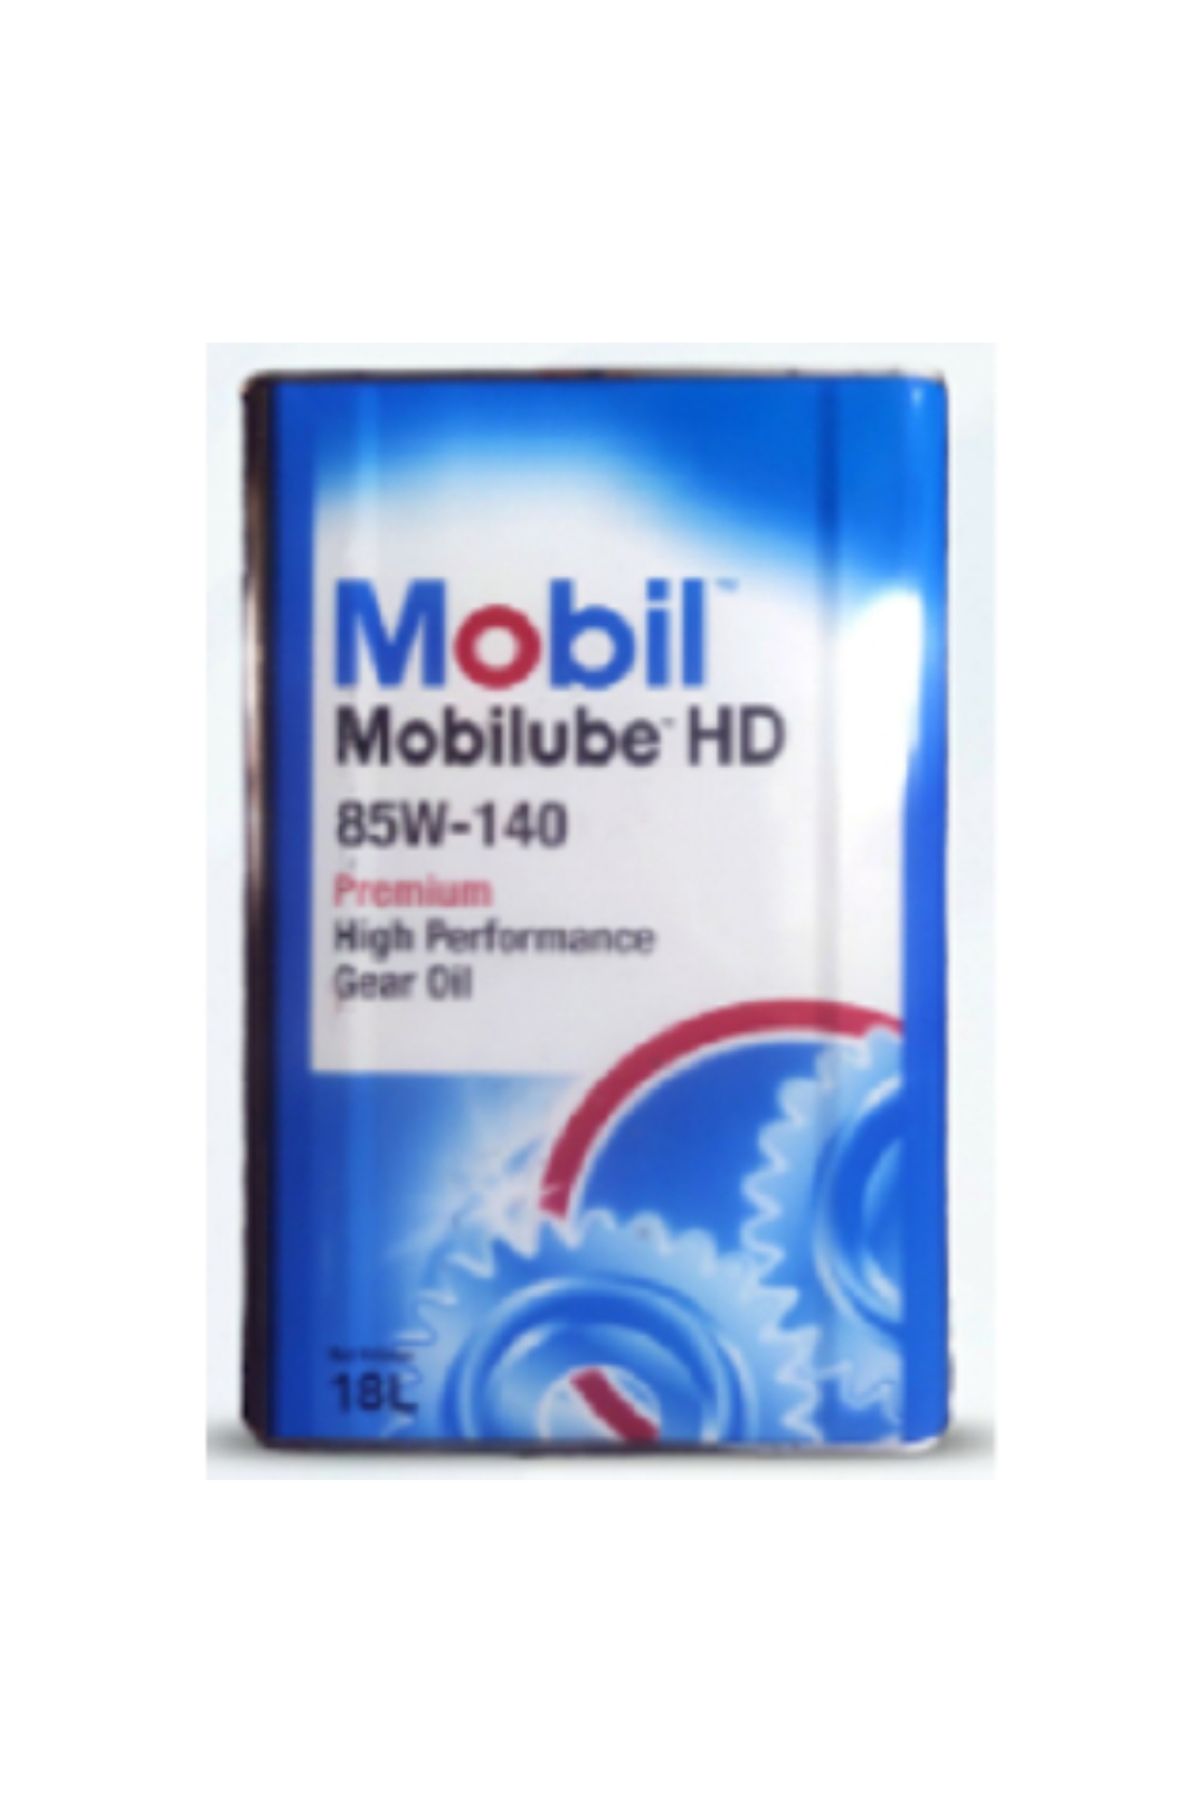 Mobil Mobilube HD 85W-140 - 18 Litre Ağır Hizmet Dişli Yağı  Uyumlu